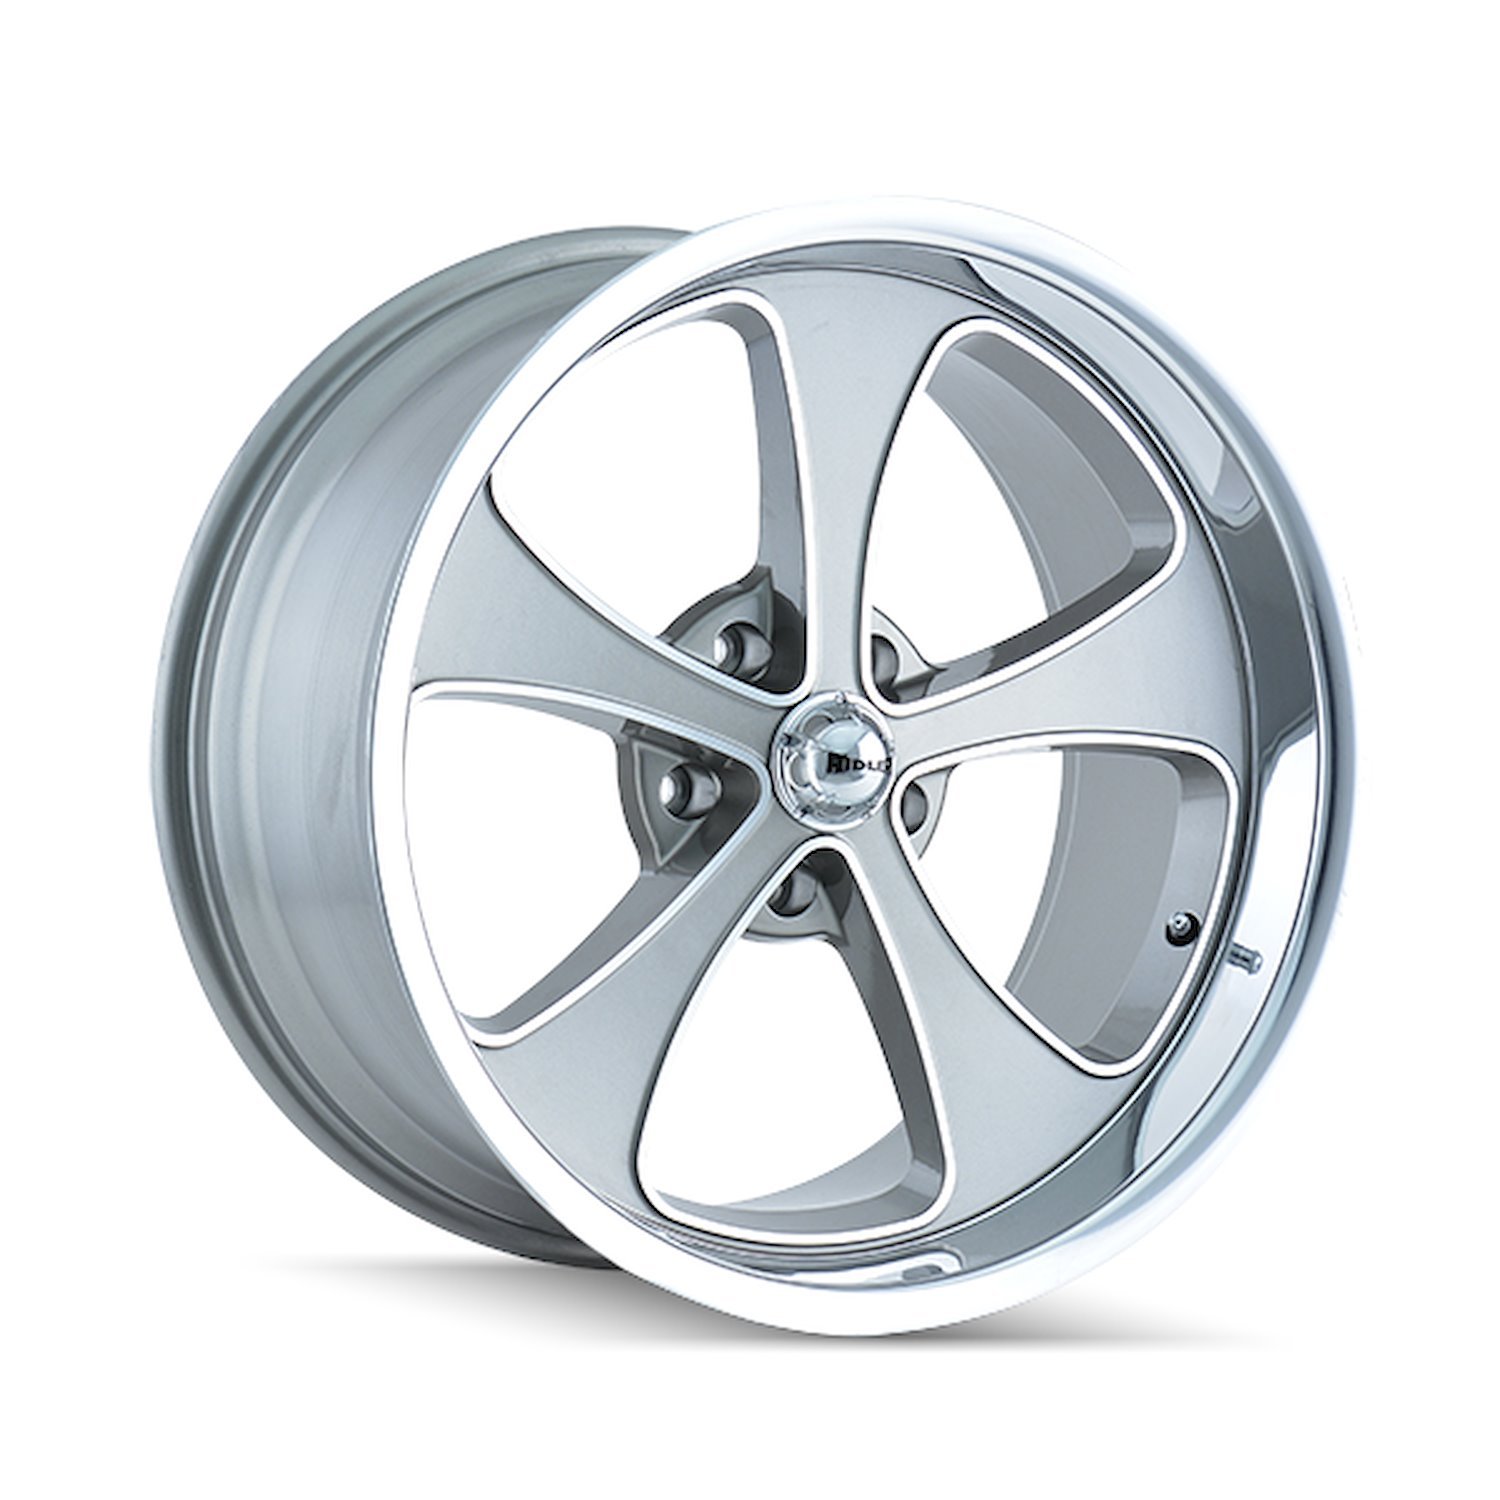 645-2165GP 645-Series Wheel [Size: 20" x 10"] Gloss Grey Machined/Polished Finish